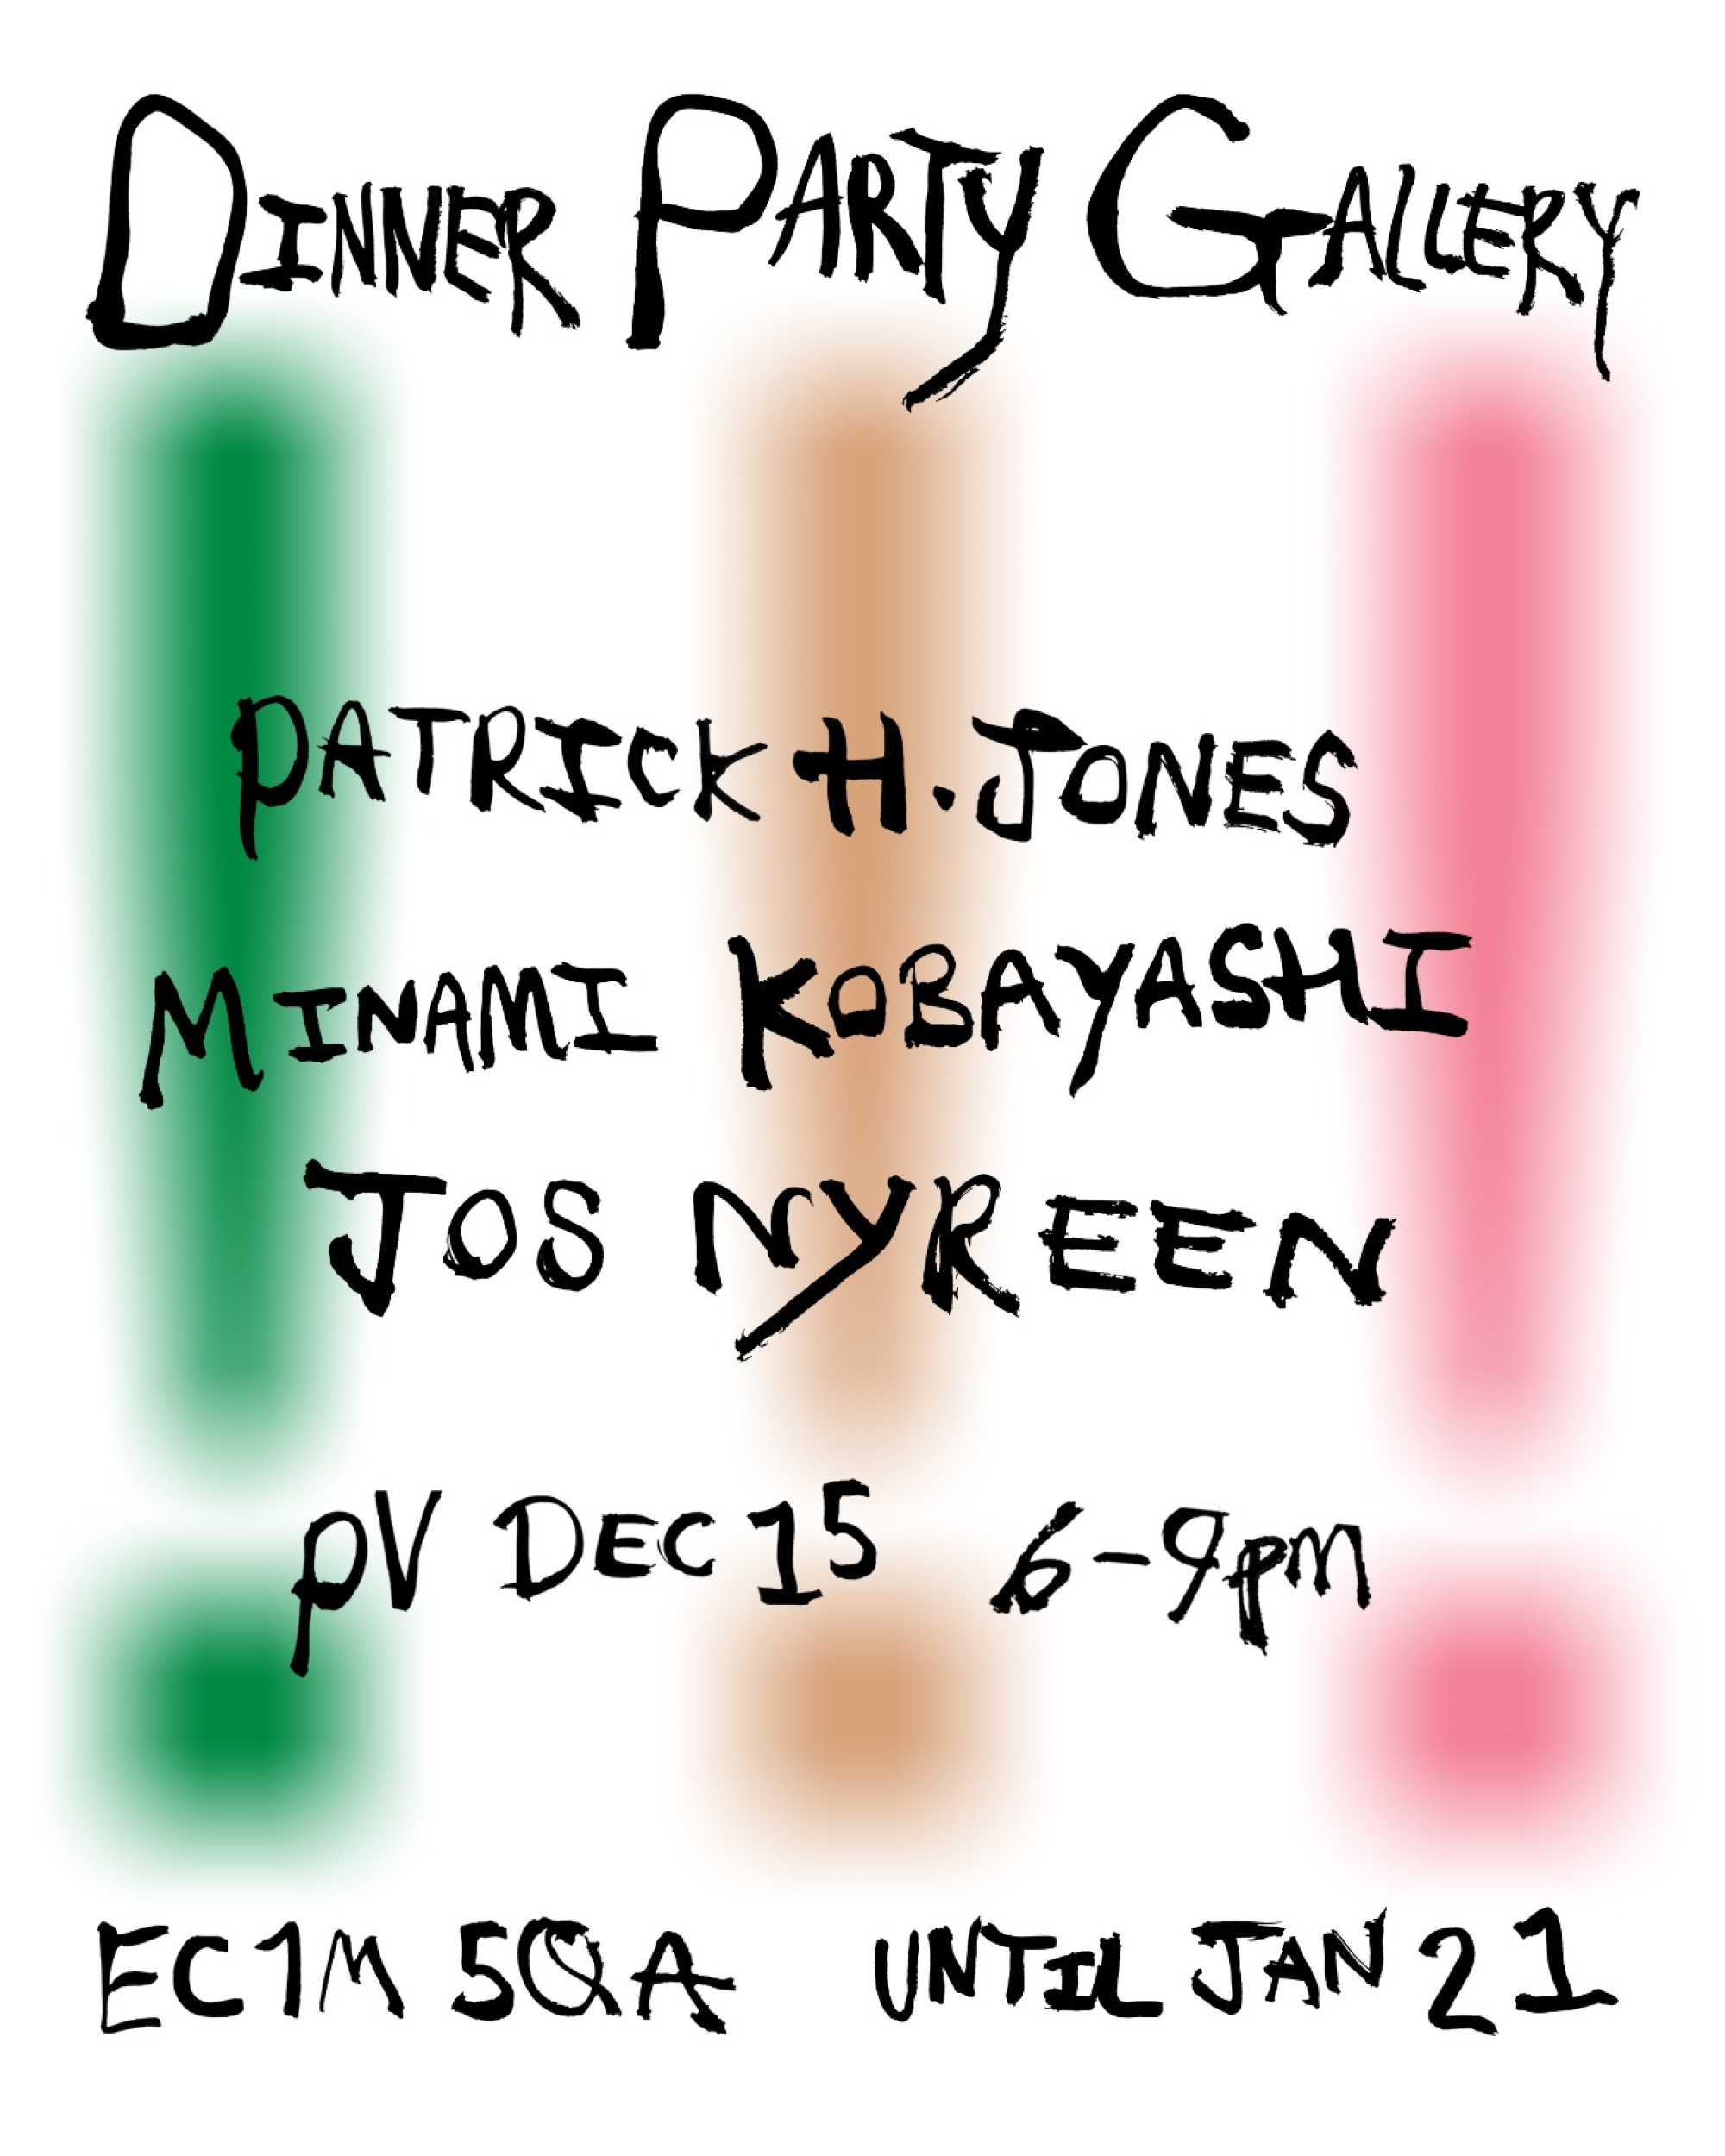 Poster: Jos Nyreen, Patrick H Jones And Minami Kobayashi At Dinner Party Gallery